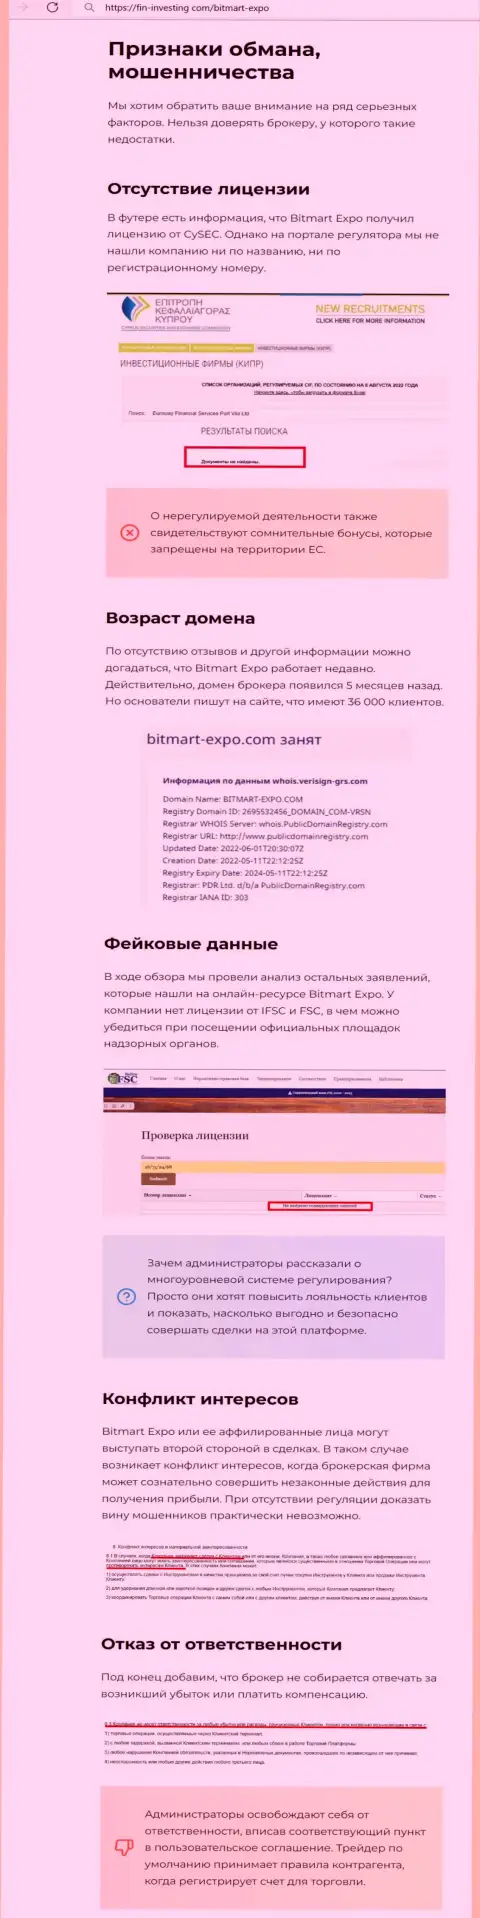 Публикация о мошеннических условиях взаимодействия в конторе Bitmart Expo